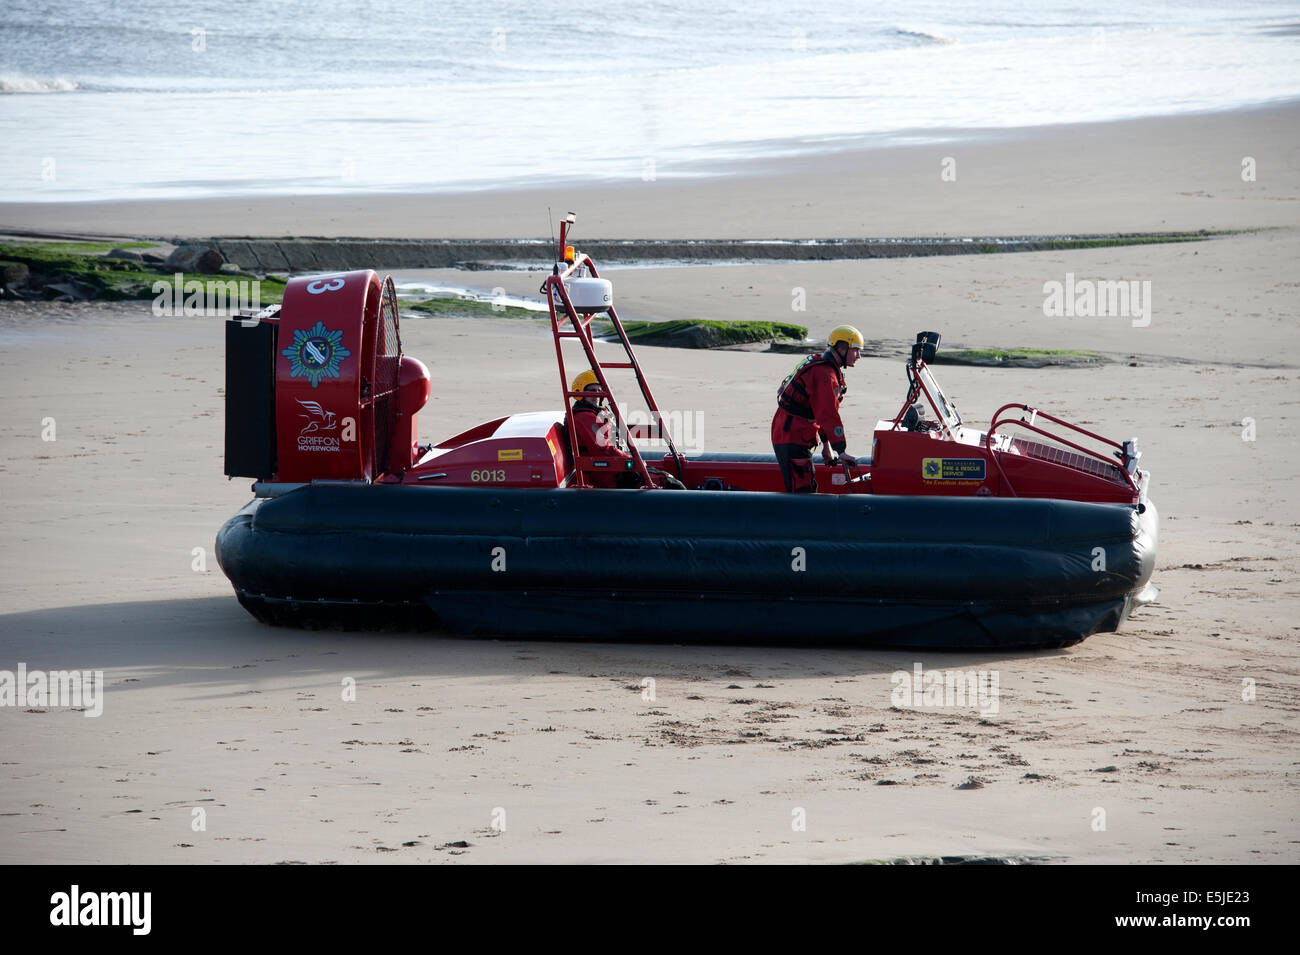 Fire & Rescue Service y aerodeslizadores agua barro Playa Foto de stock